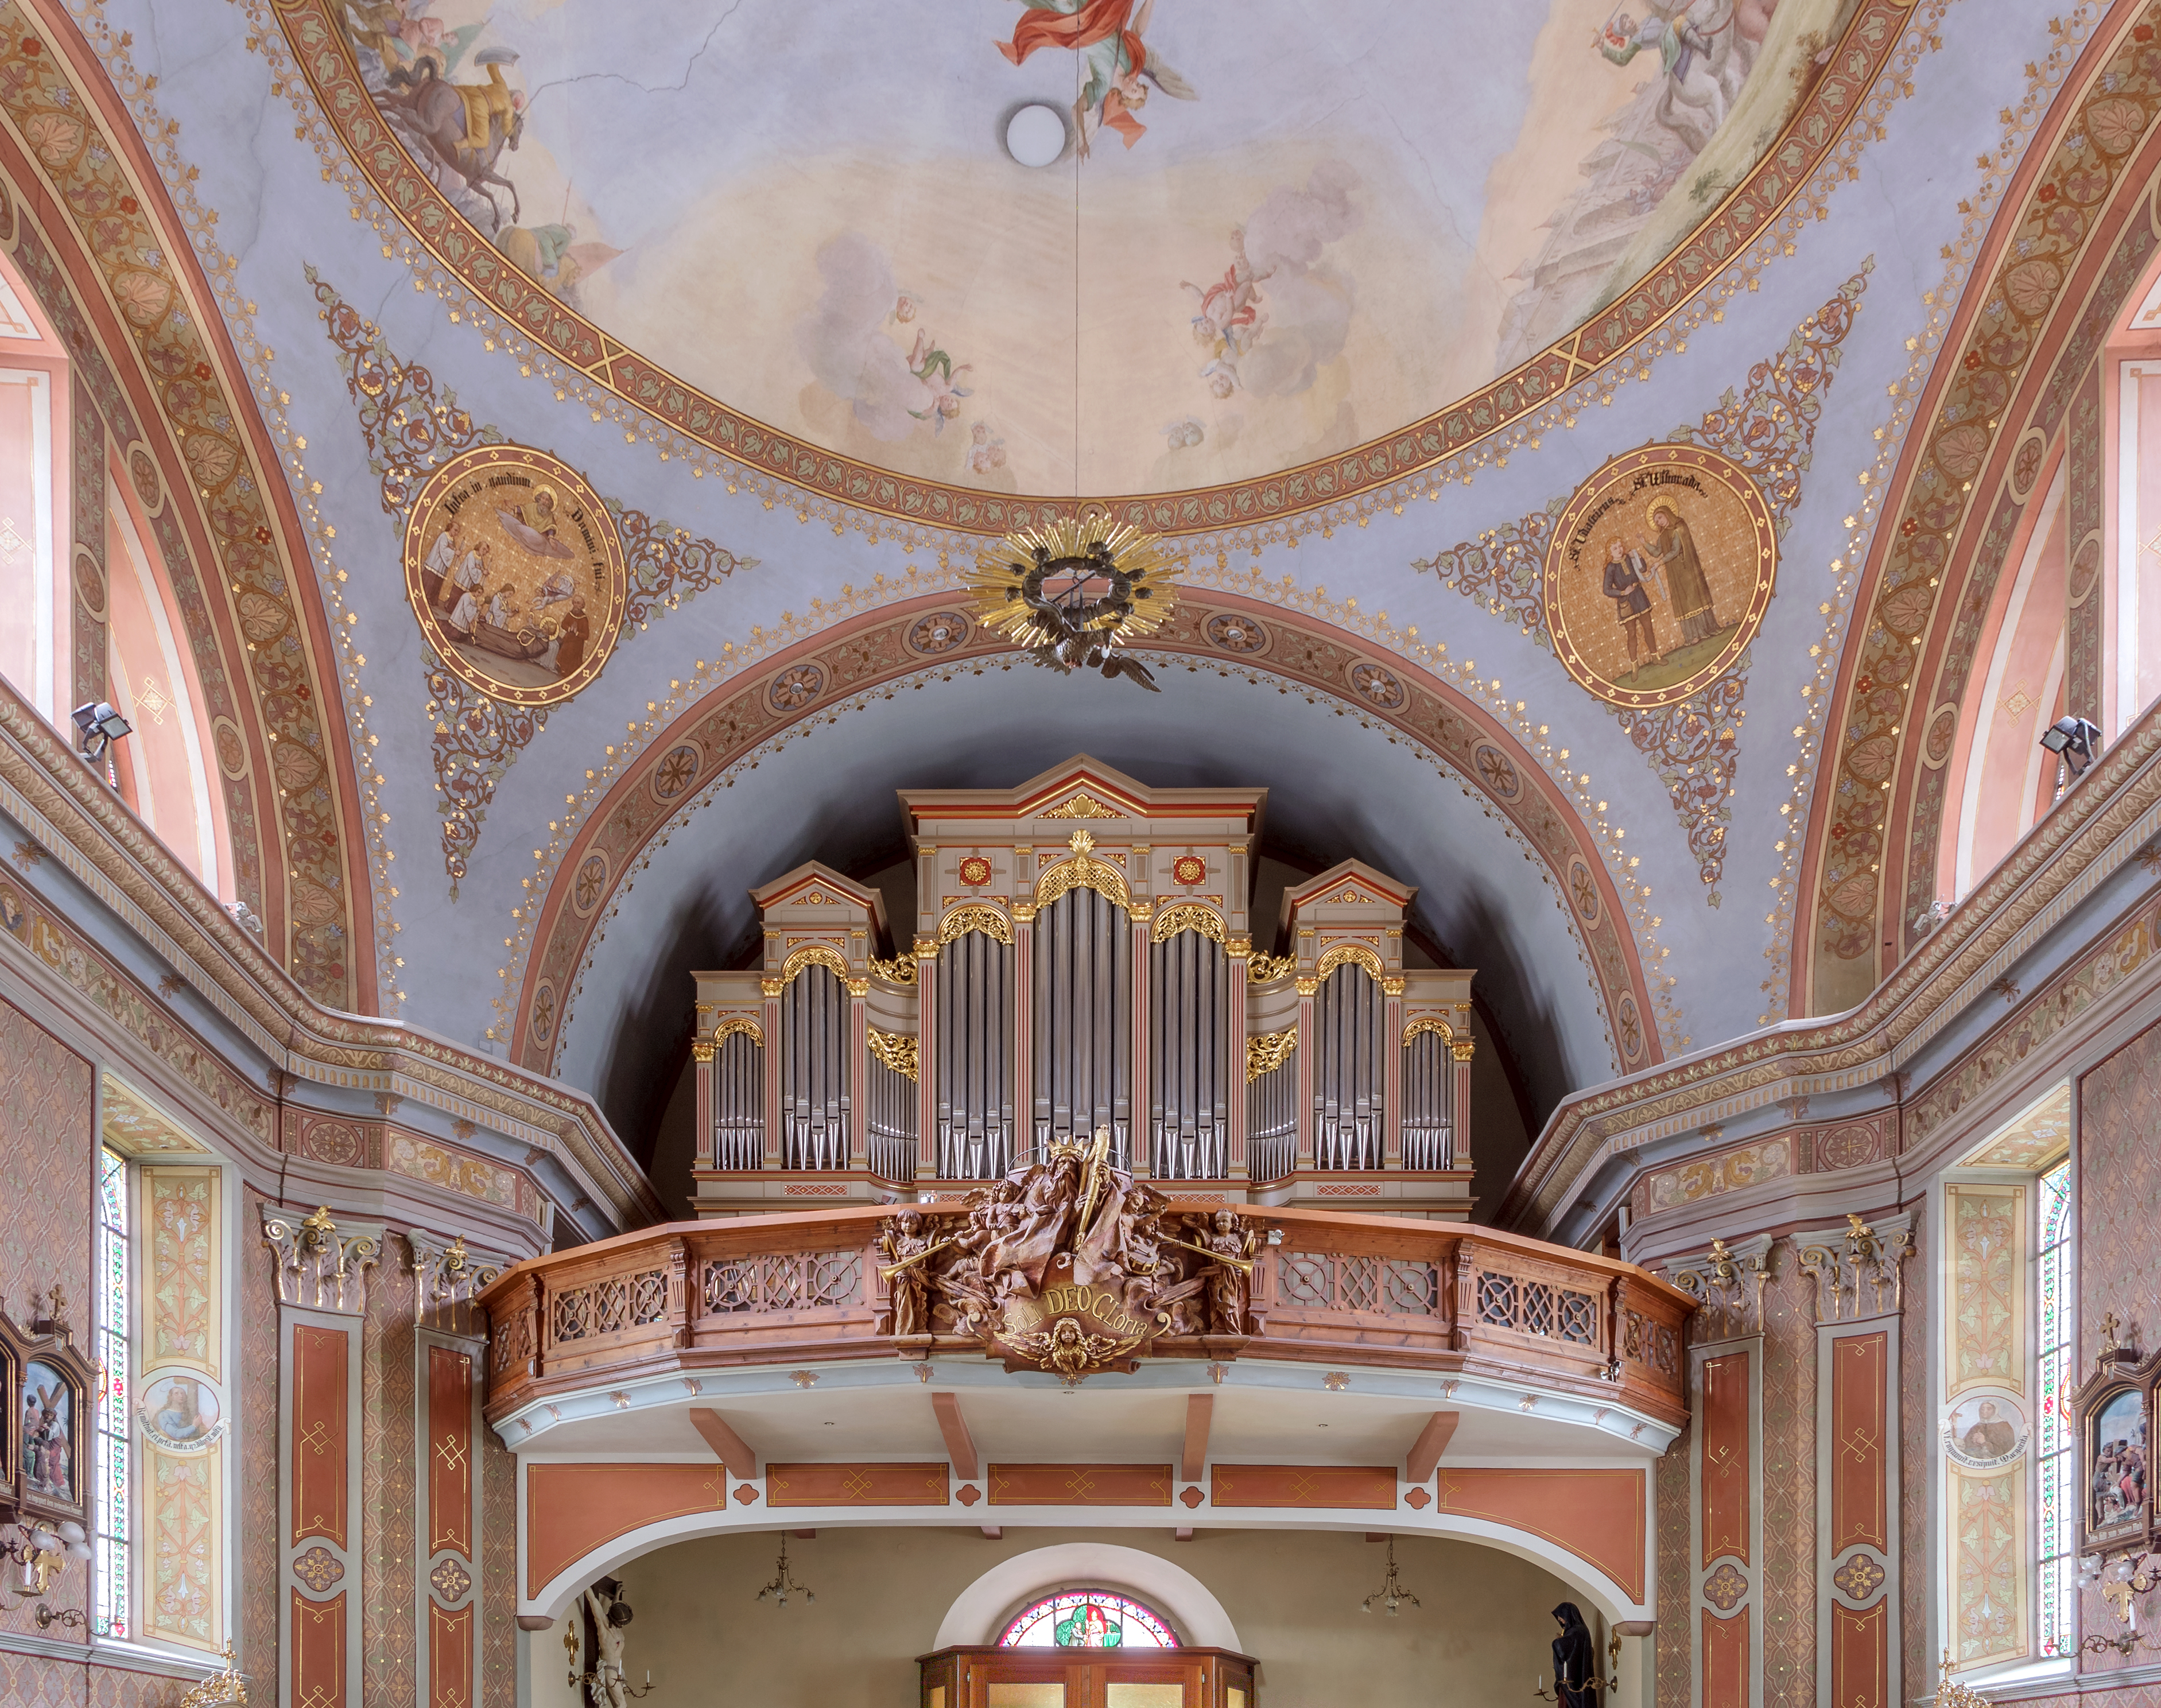 Parish church St. Ulrich - Urtijëi - Organ loft